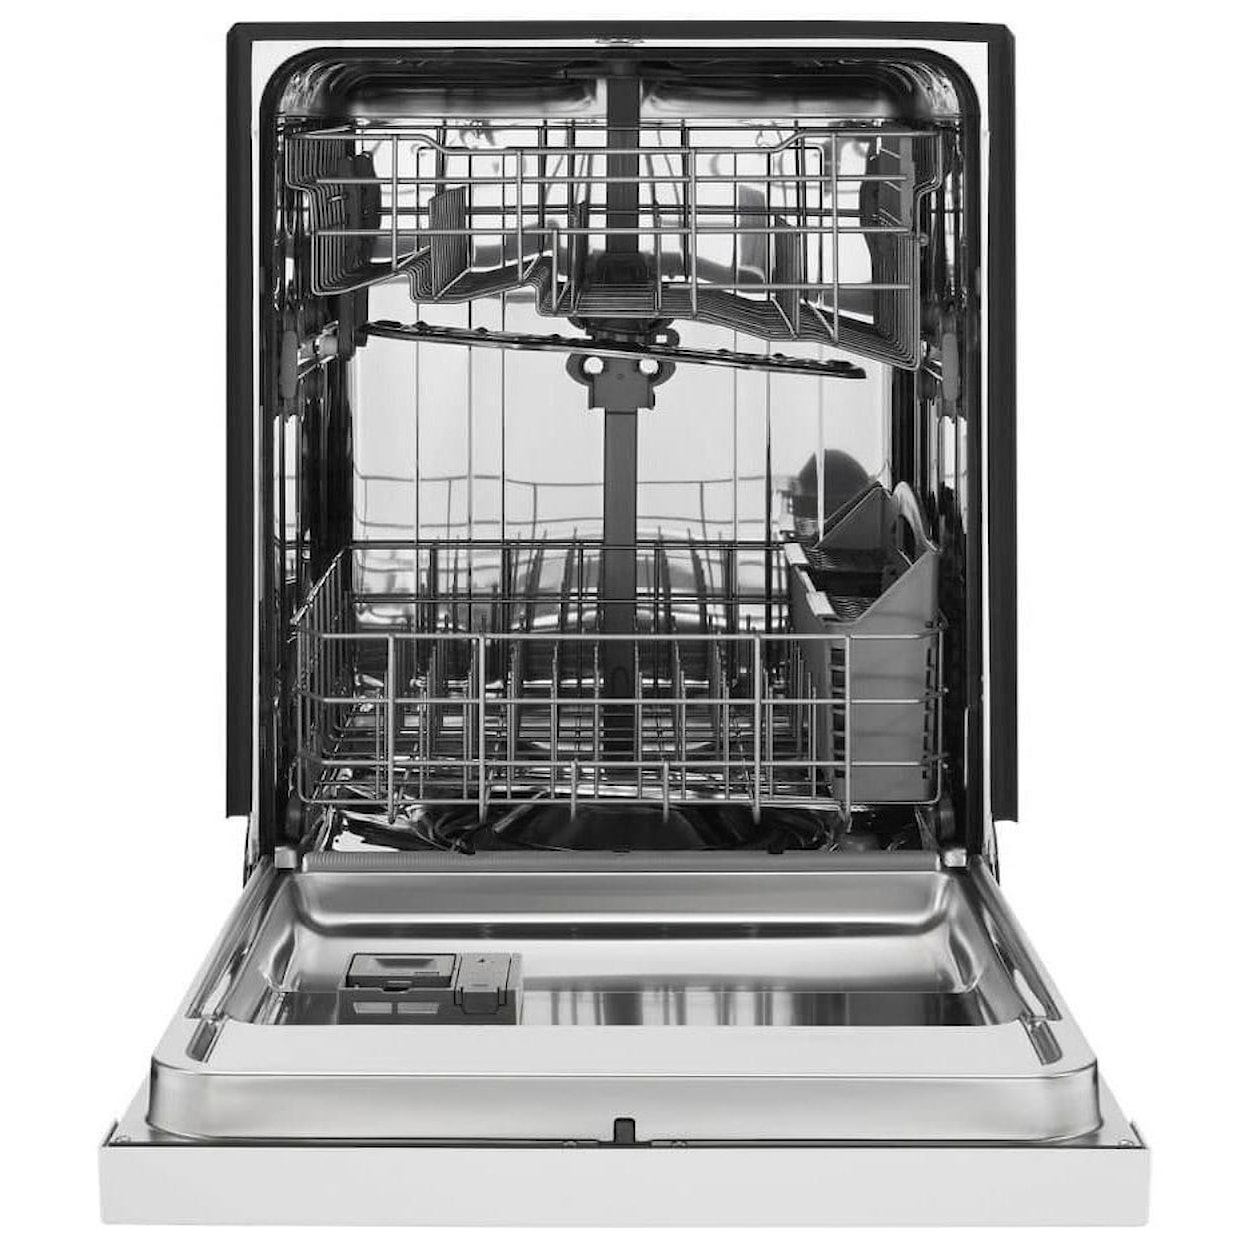 Maytag Dishwashers Stainless Steel Tub Dishwasher